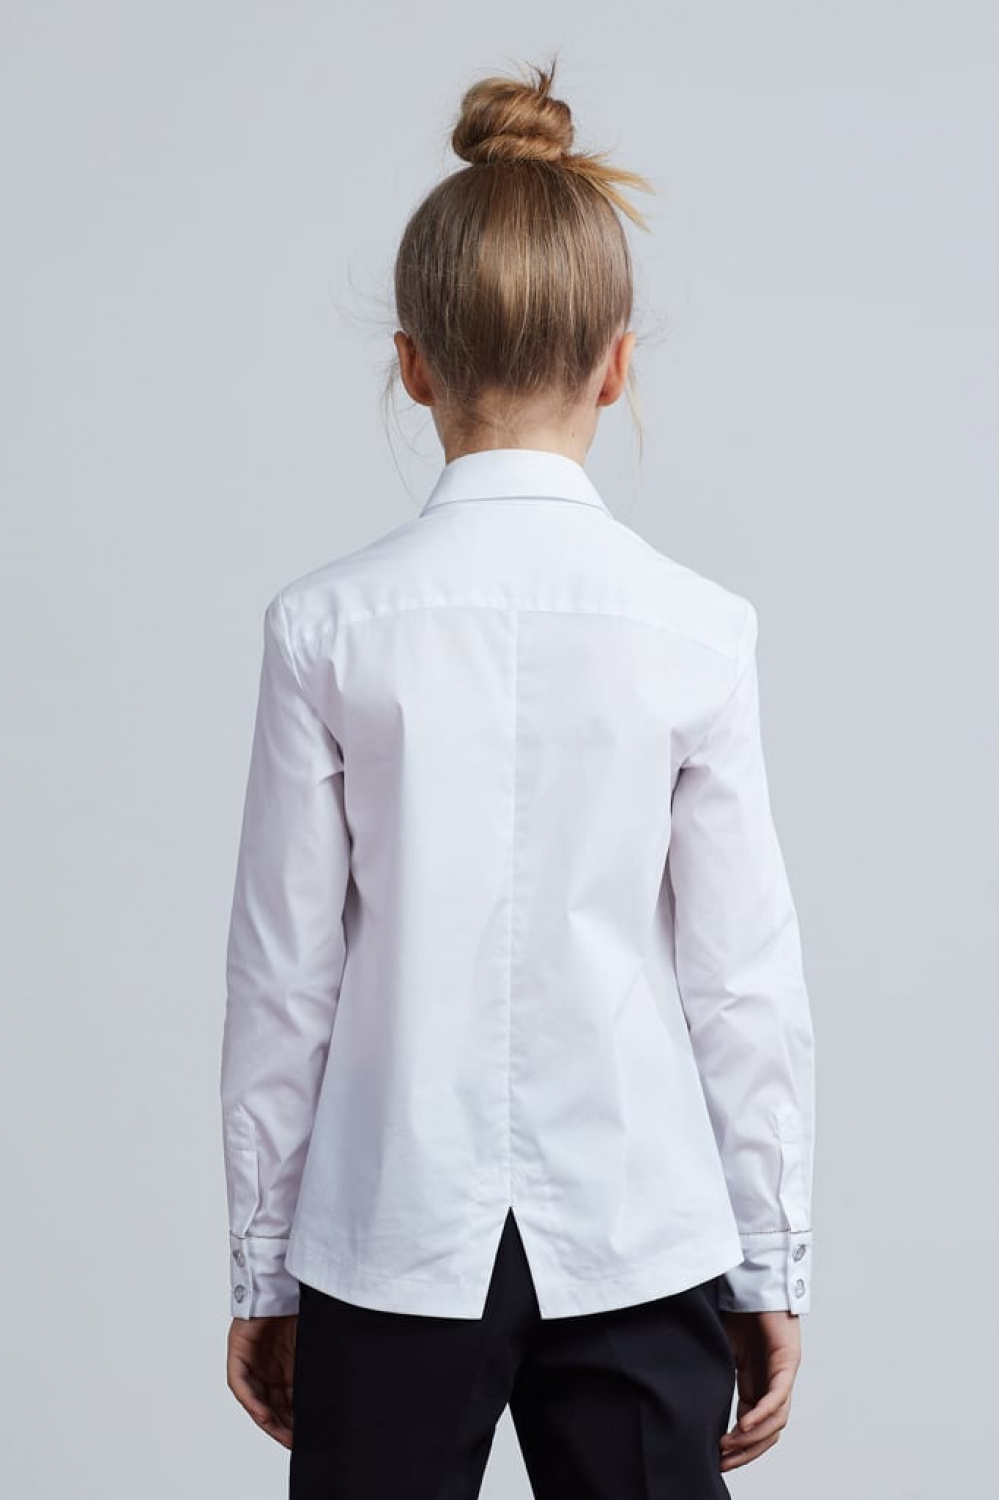 Хлопковая блузка с блестящей отделкой (SSFSG-929-23003-200) Silver Spoon